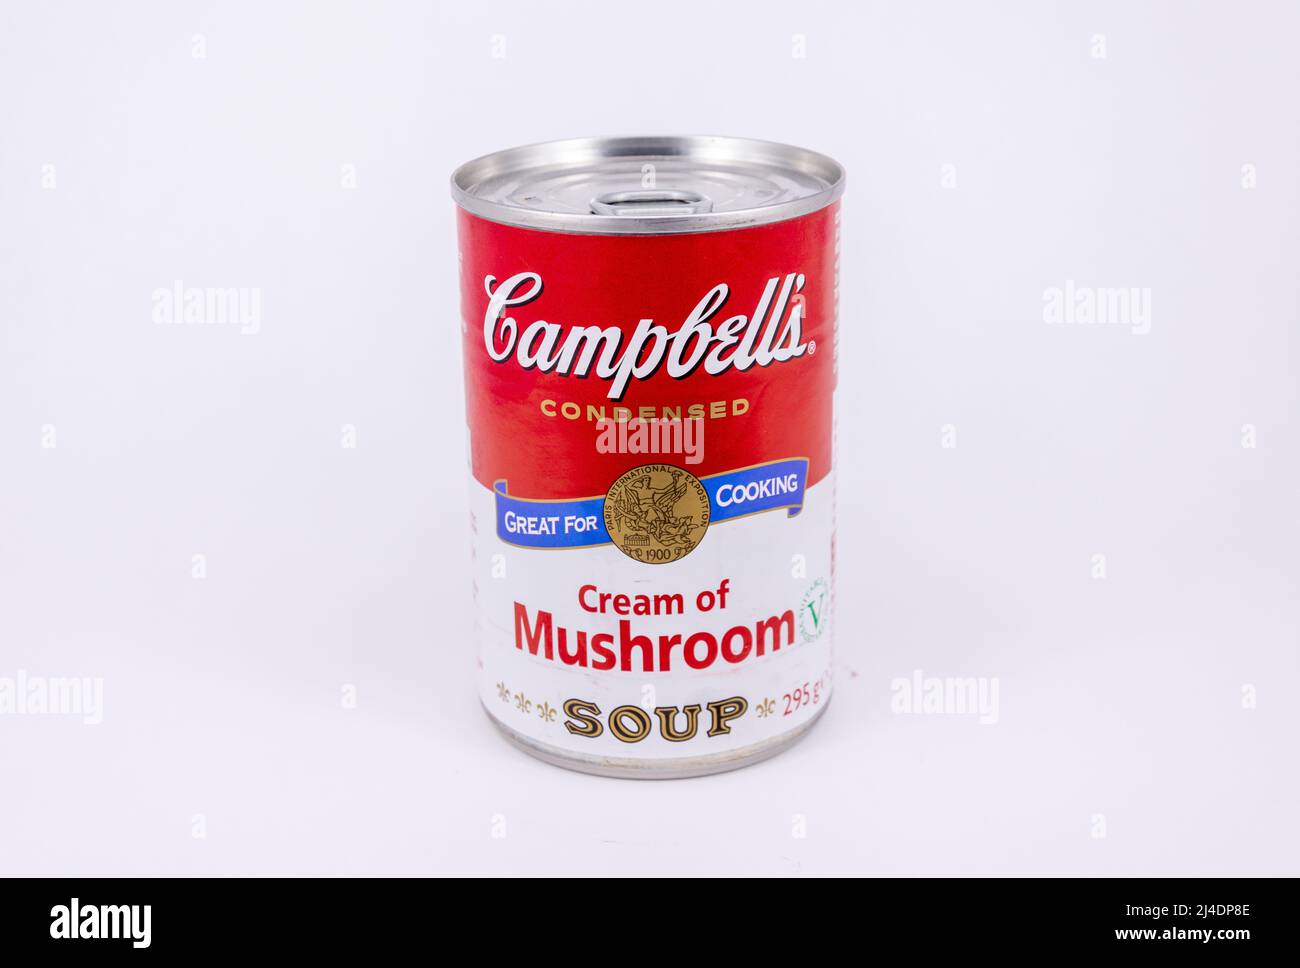 Gros plan d'une boîte de soupe Campbells Cream of Mushroom, Surrey, Angleterre, Royaume-Uni Banque D'Images